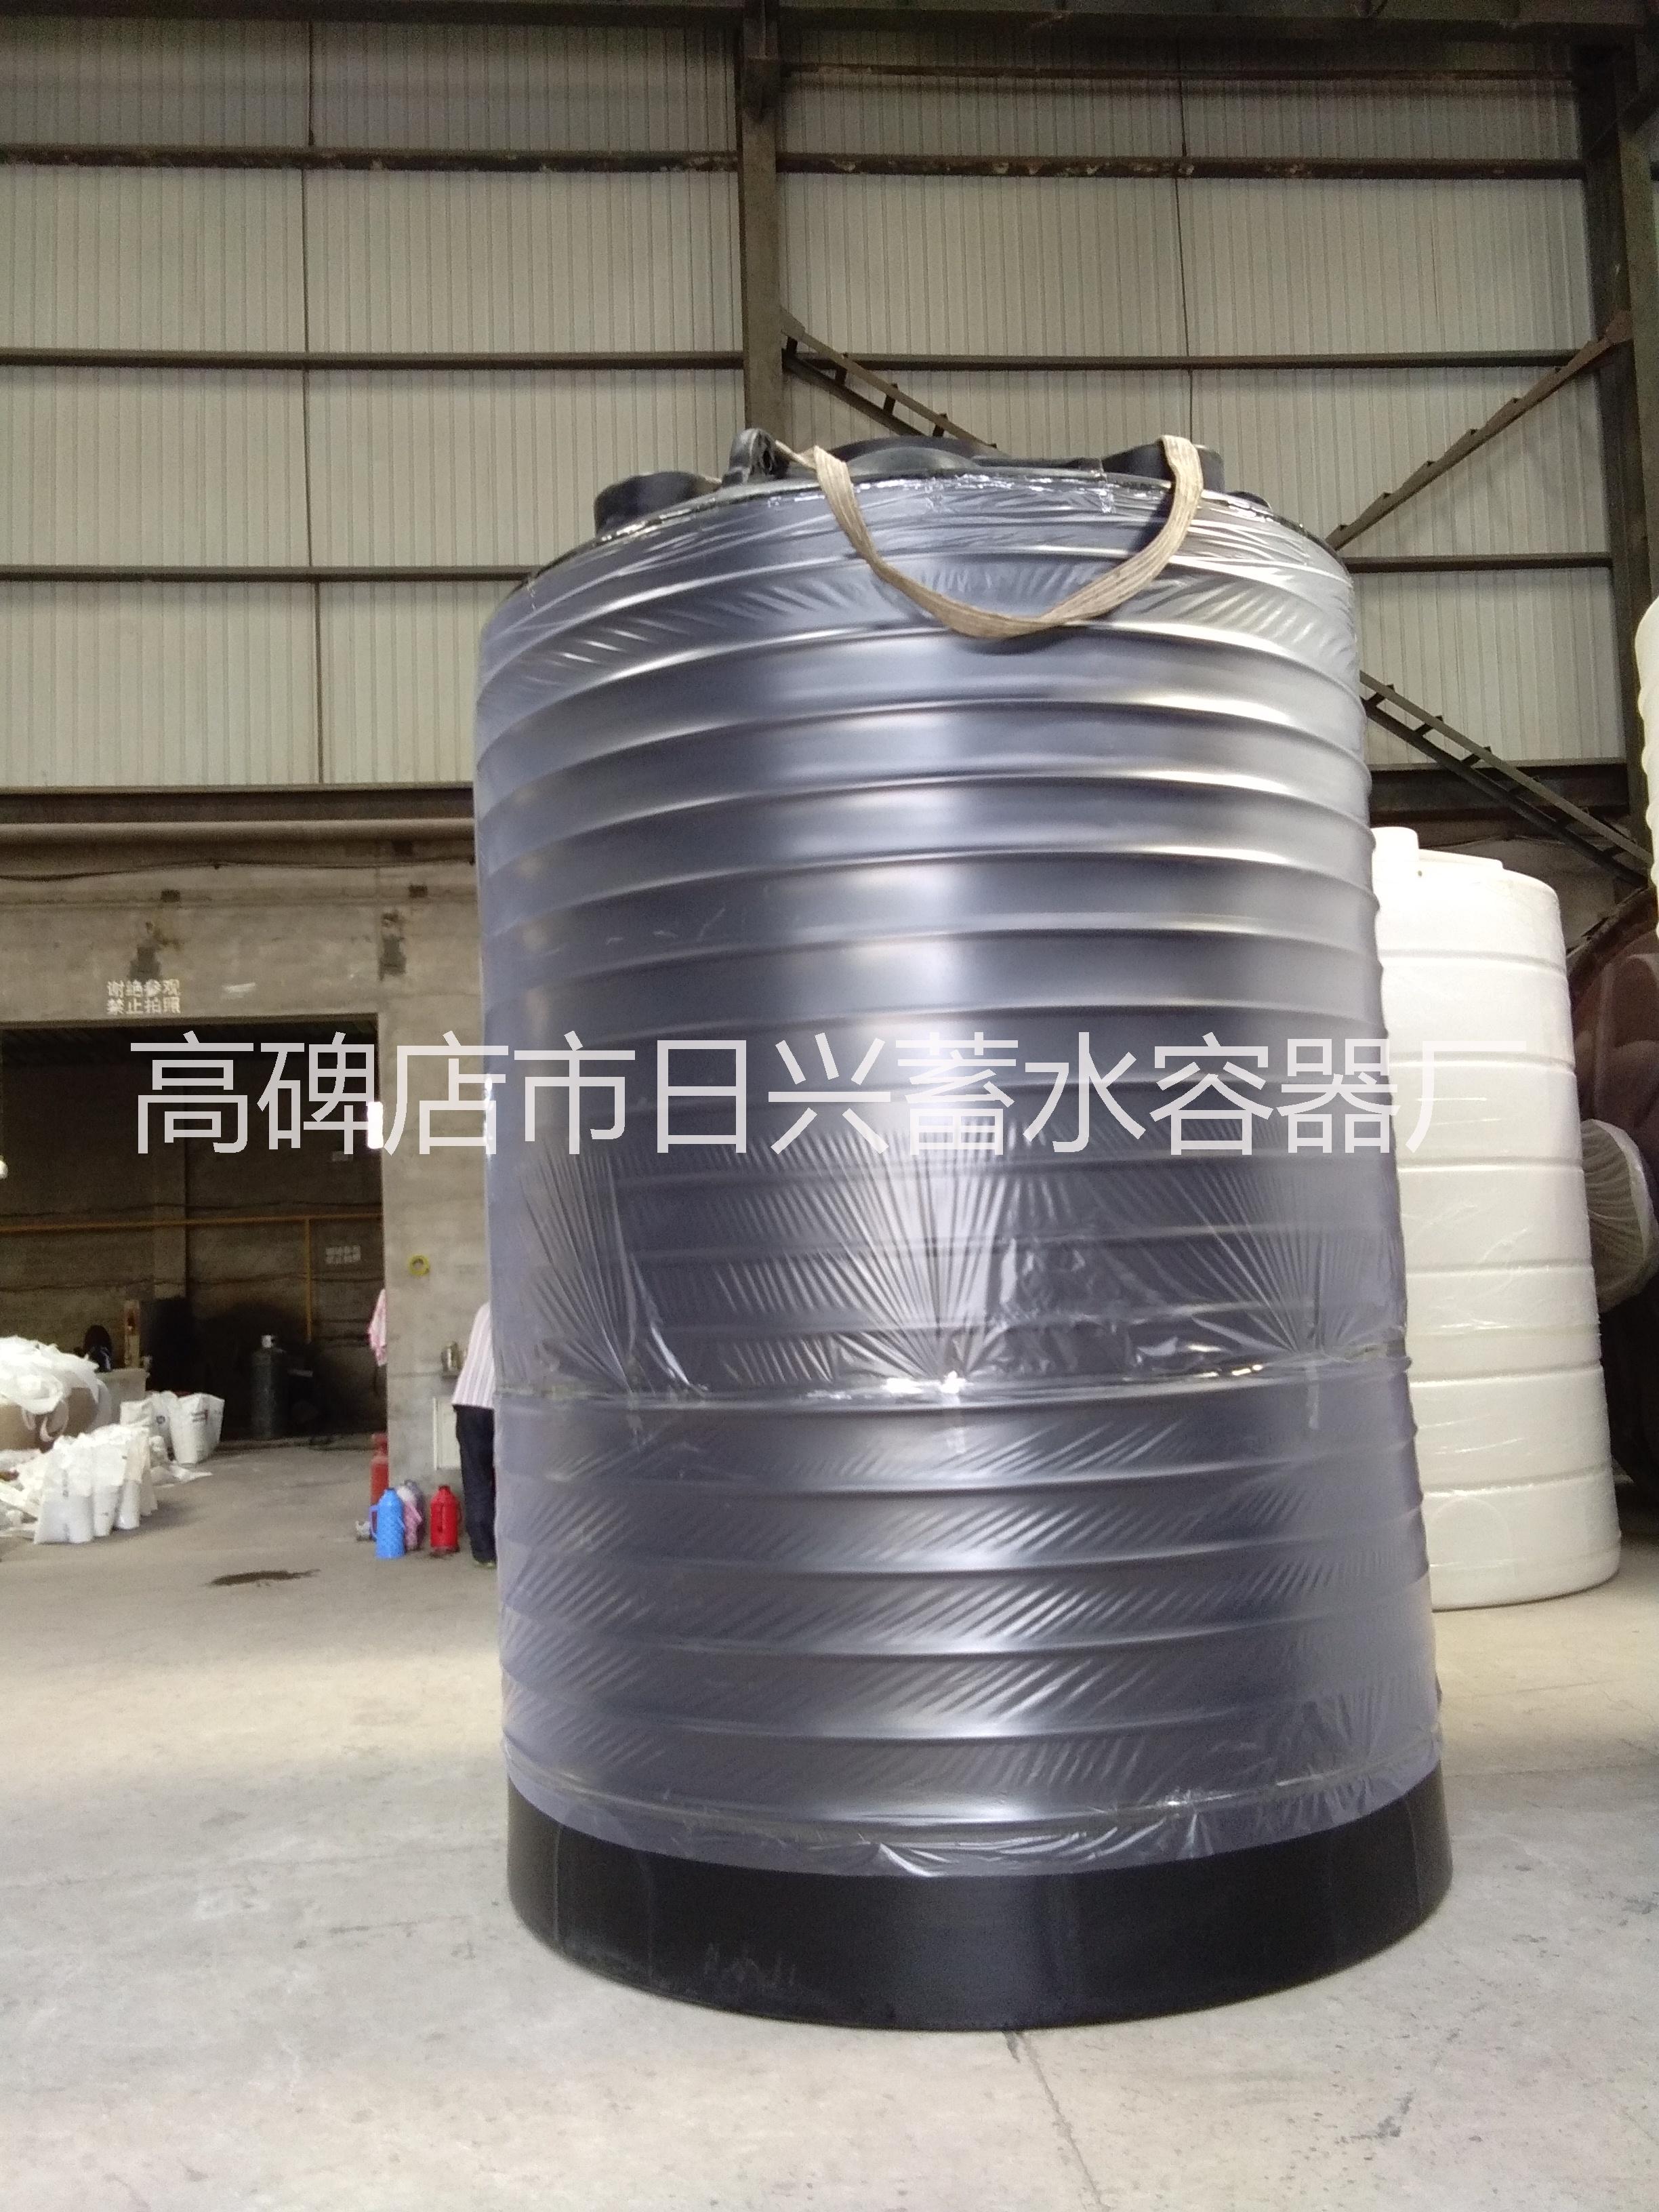 保定市津南15吨塑料桶价格厂家北京供货商天津津南15吨塑料桶价格醇油储罐塑料贮存罐